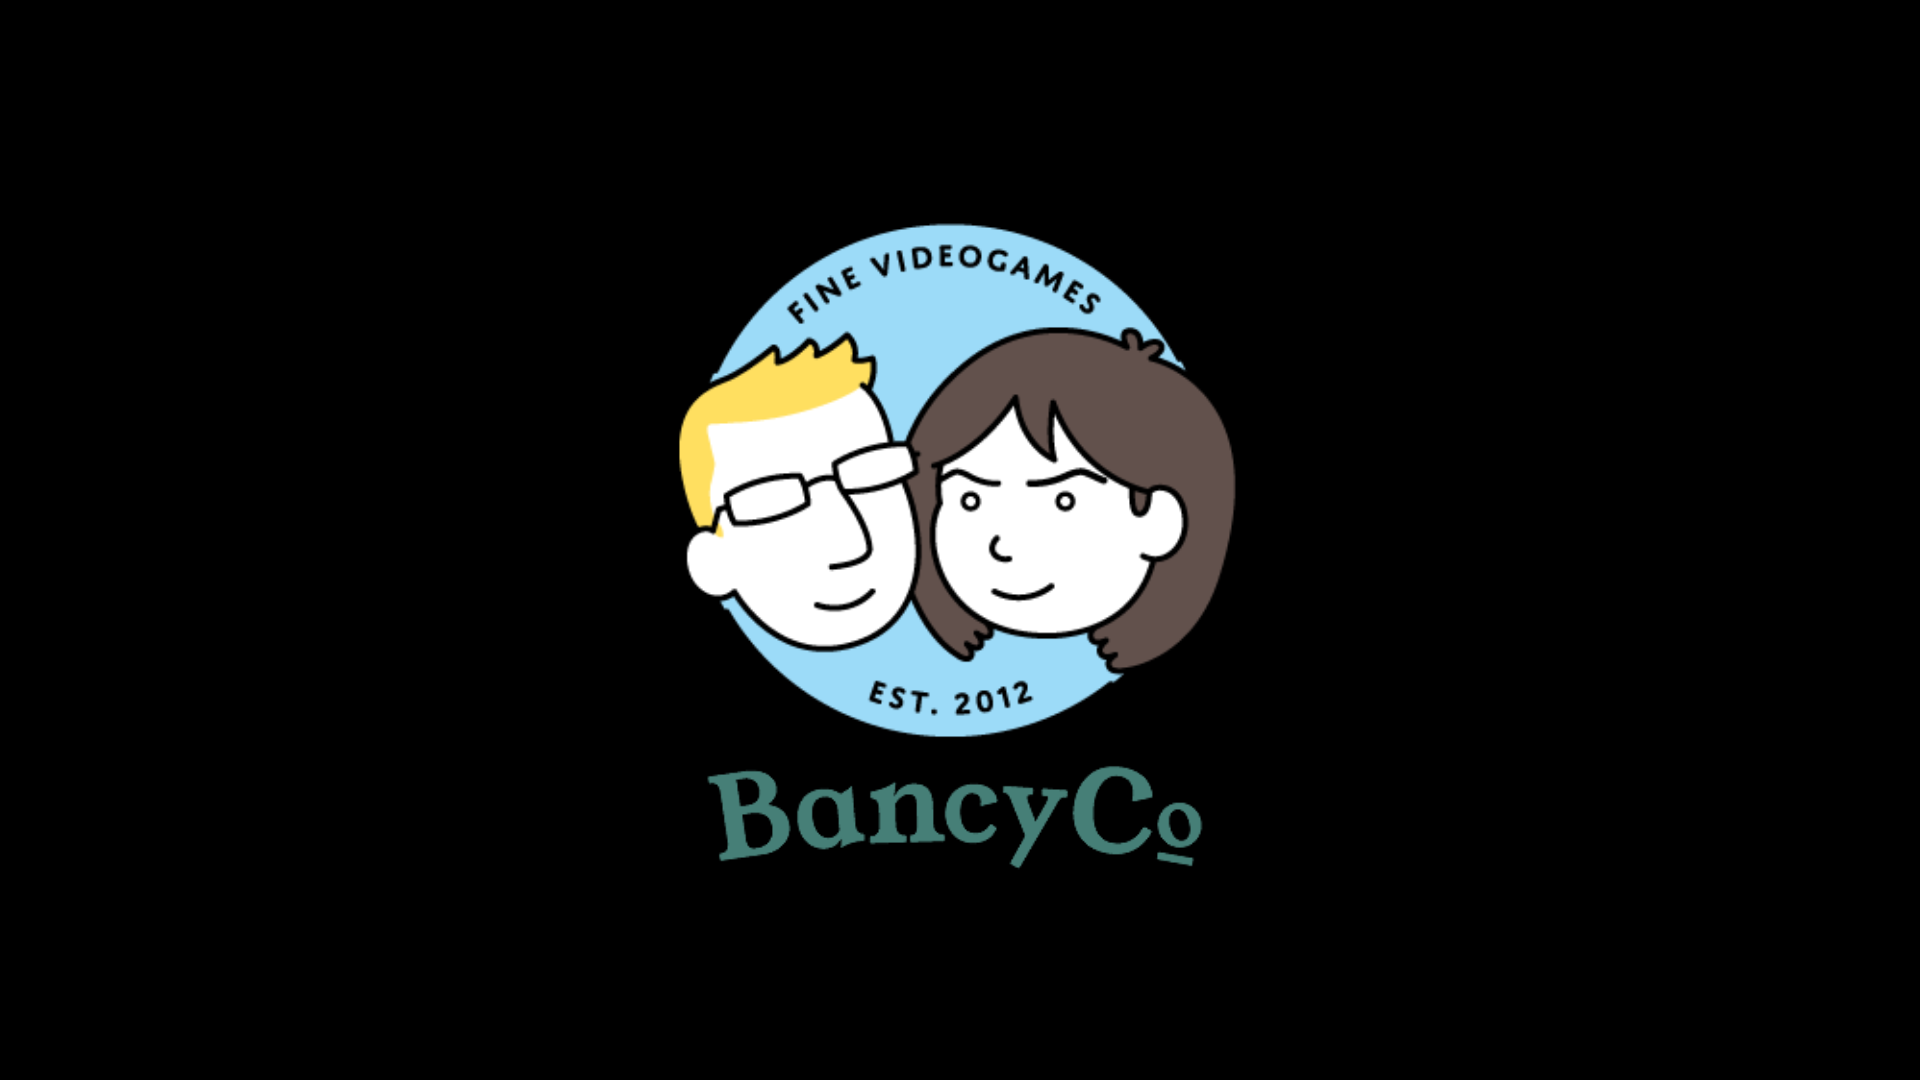 BancyCo